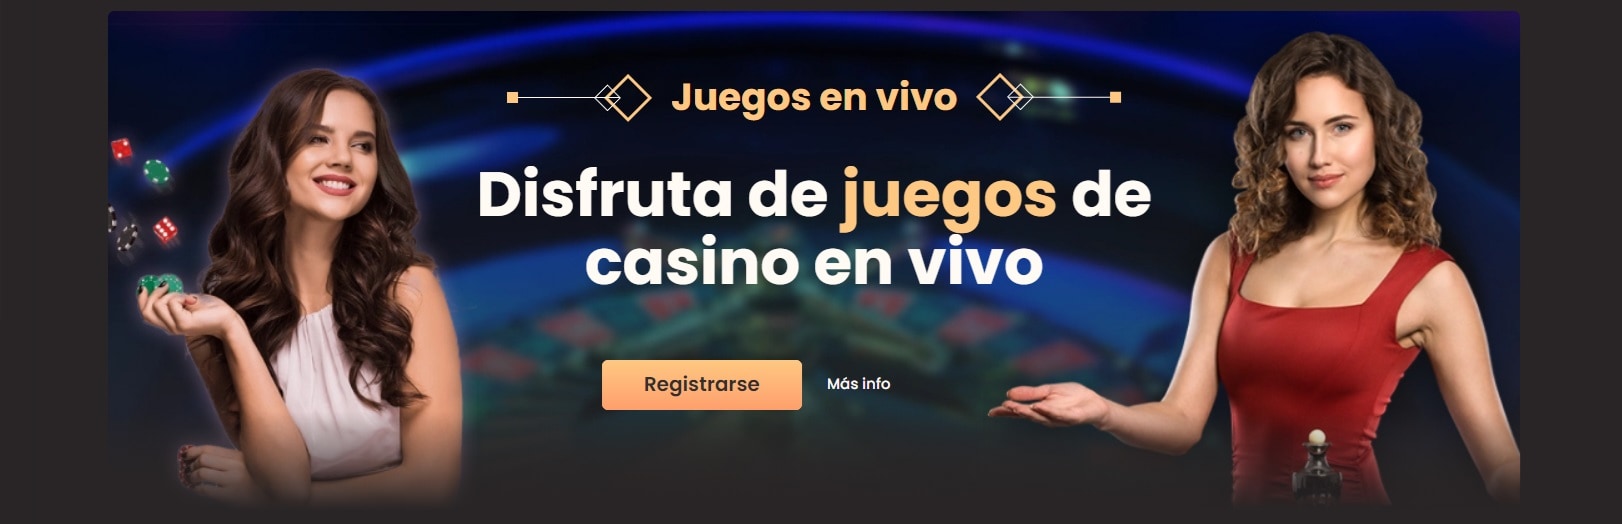 National Casino juegos de casino en vivo